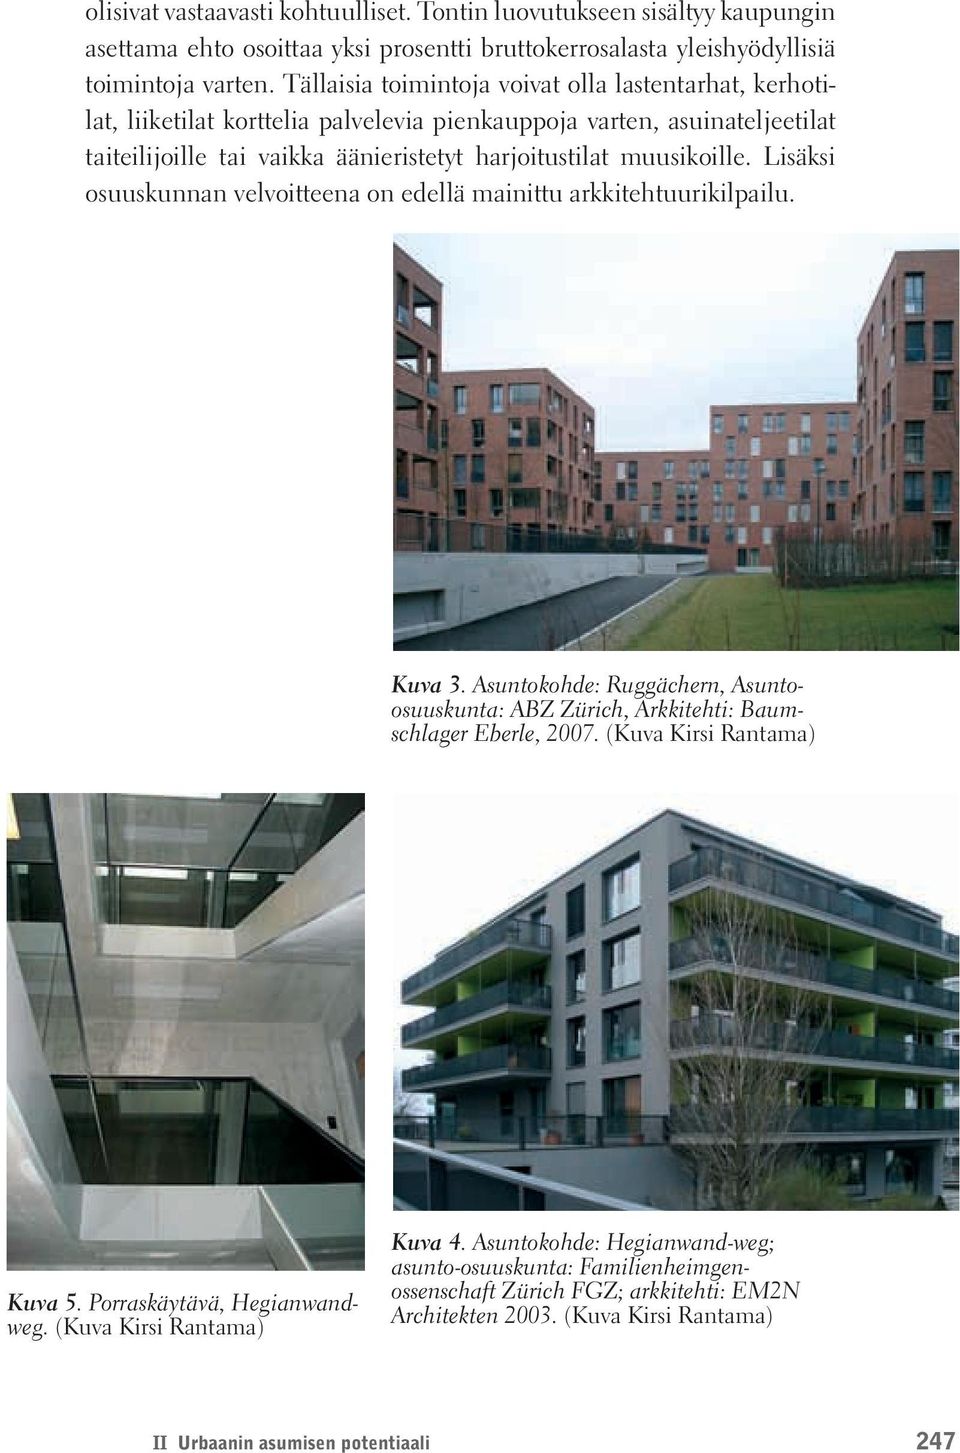 Lisäksi osuuskunnan velvoitteena on edellä mainittu arkkitehtuurikilpailu. Kuva 3. Asuntokohde: Ruggächern, Asuntoosuuskunta: ABZ Zürich, Arkkitehti: Baumschlager Eberle, 2007.